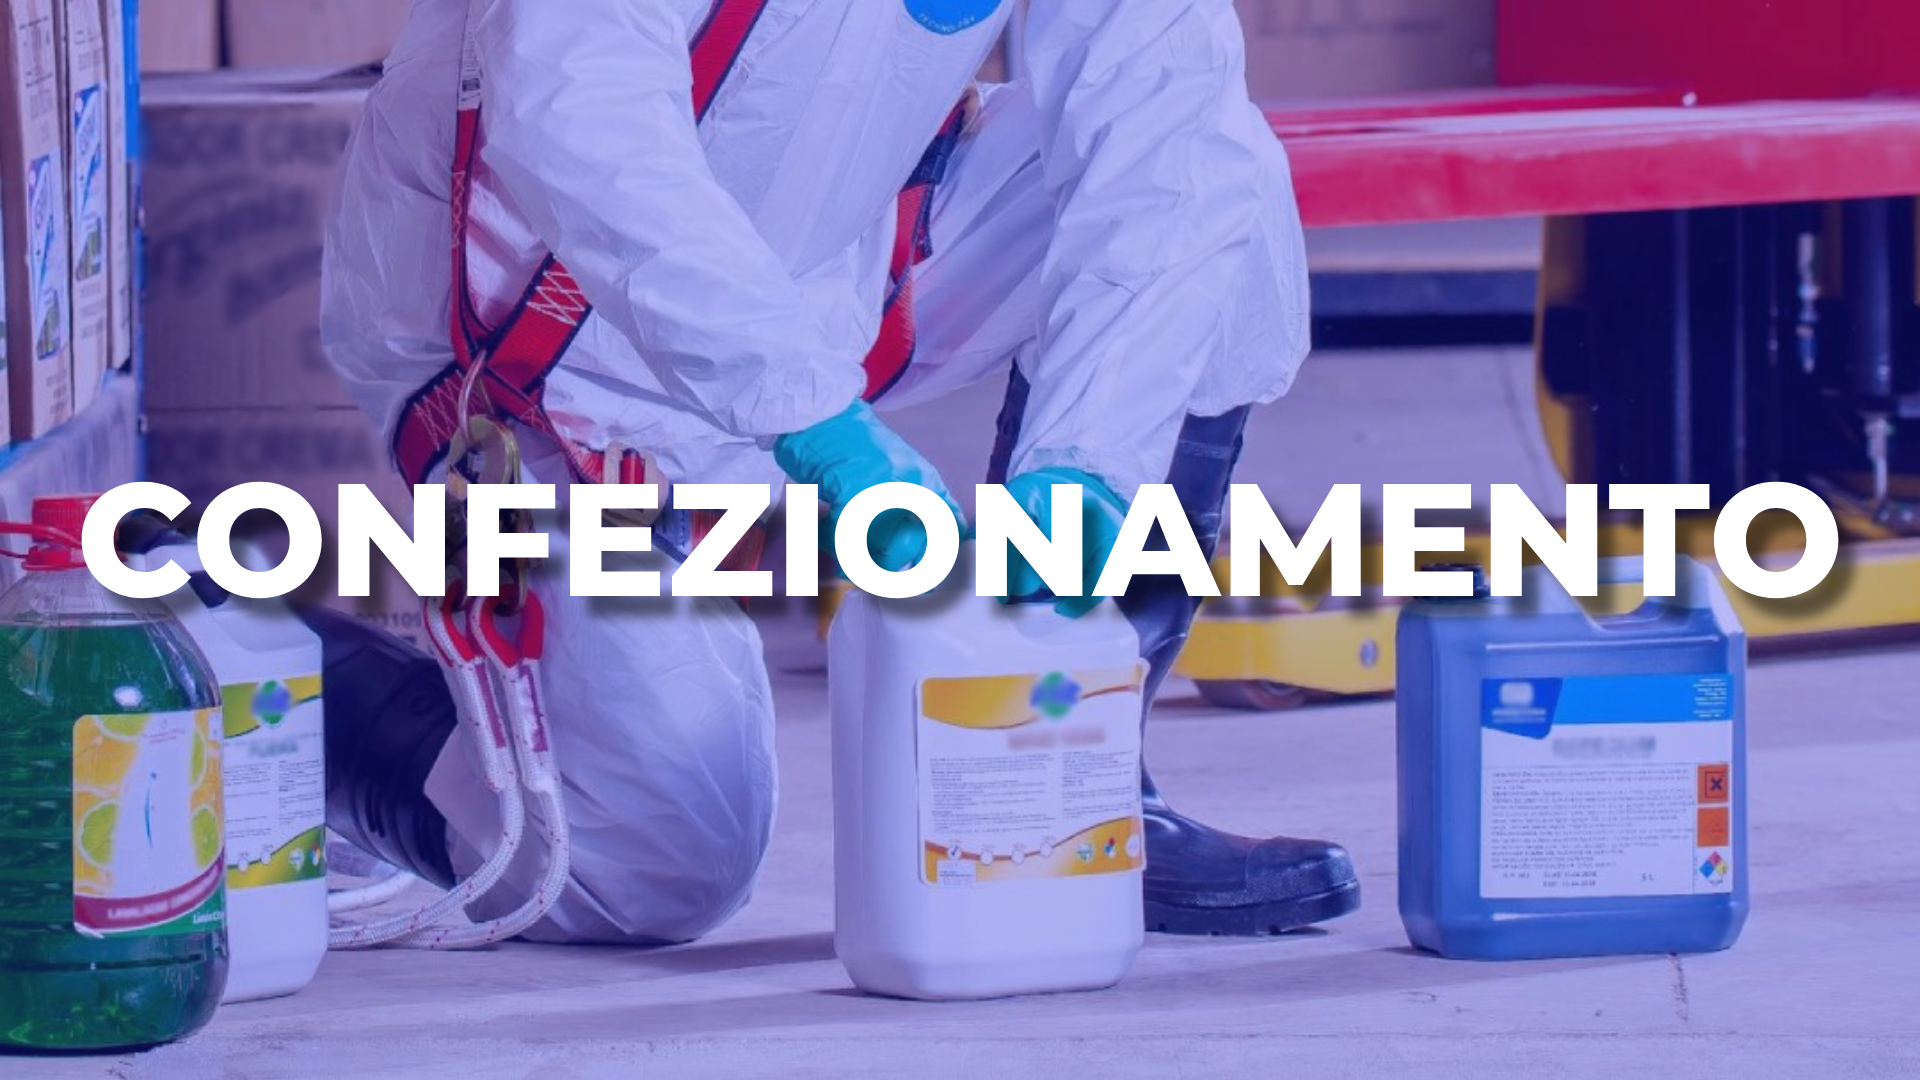 Mixer srl Piacenza azienda chimica servizio confezionamenti solventi diluenti sostanze chimiche prodotti chimici industriali industria chimica